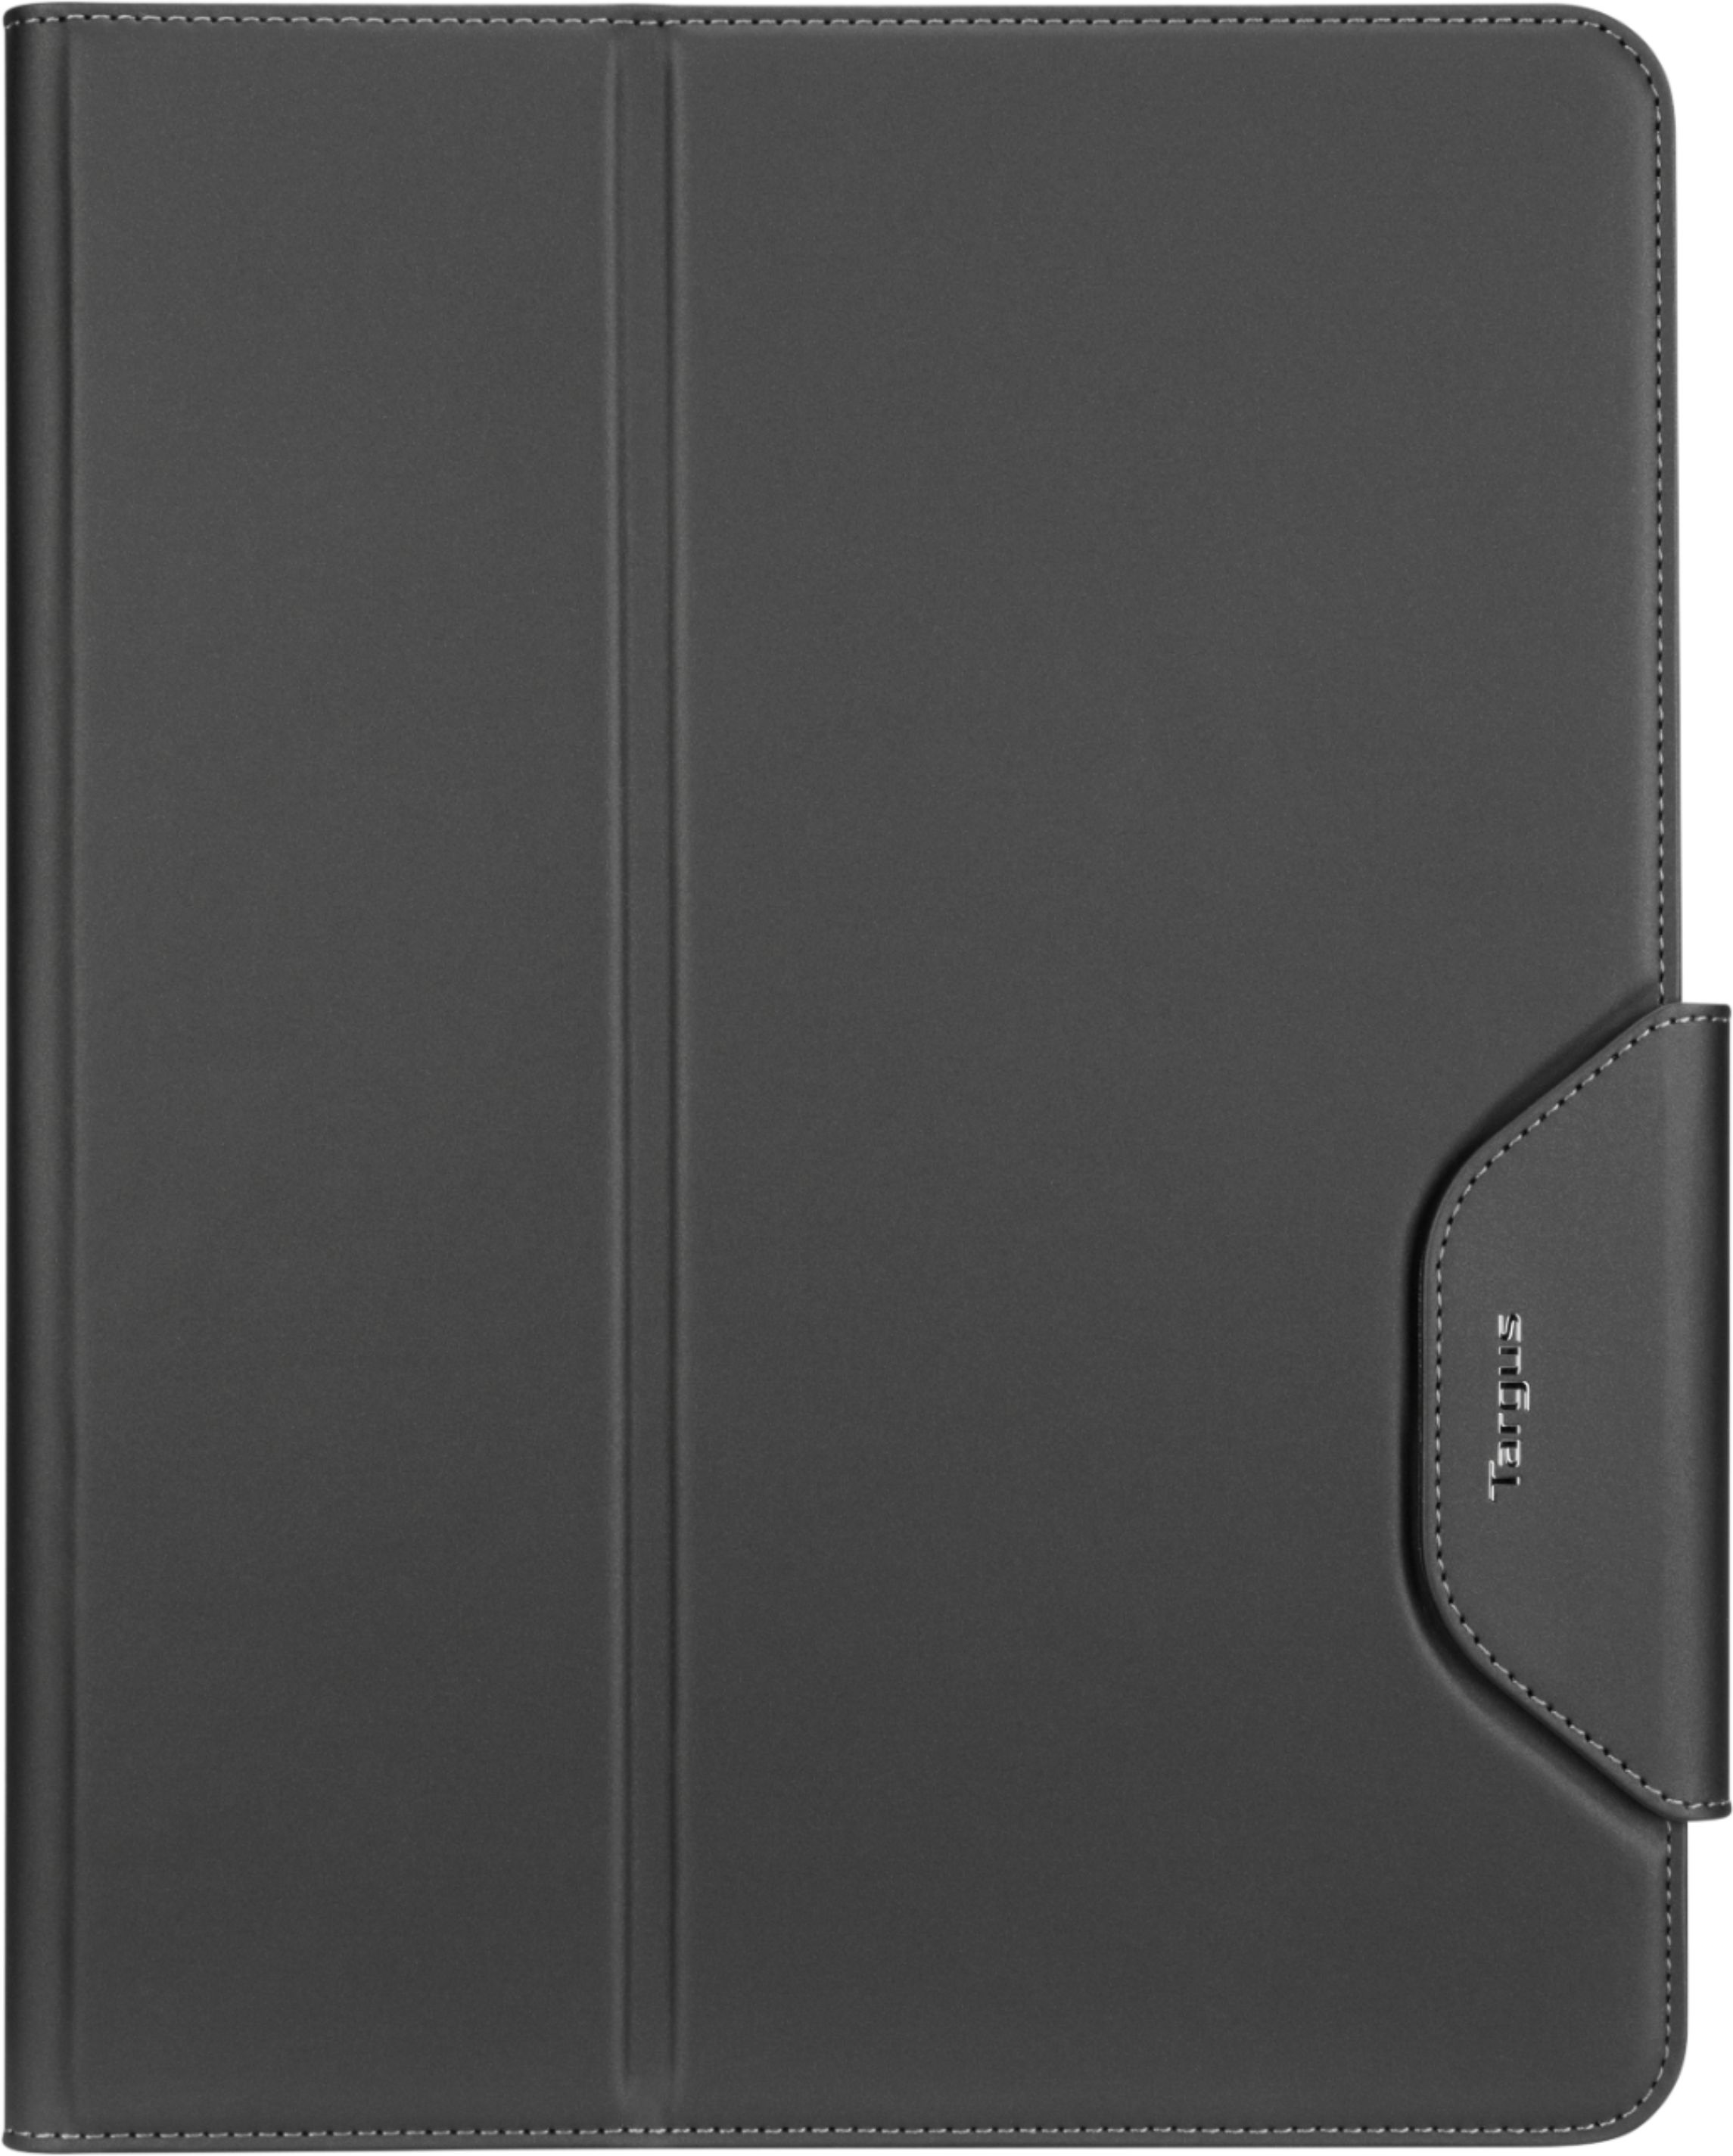 Classic Louis Vuitton iPad Pro 10.5 (2017) Folio Case